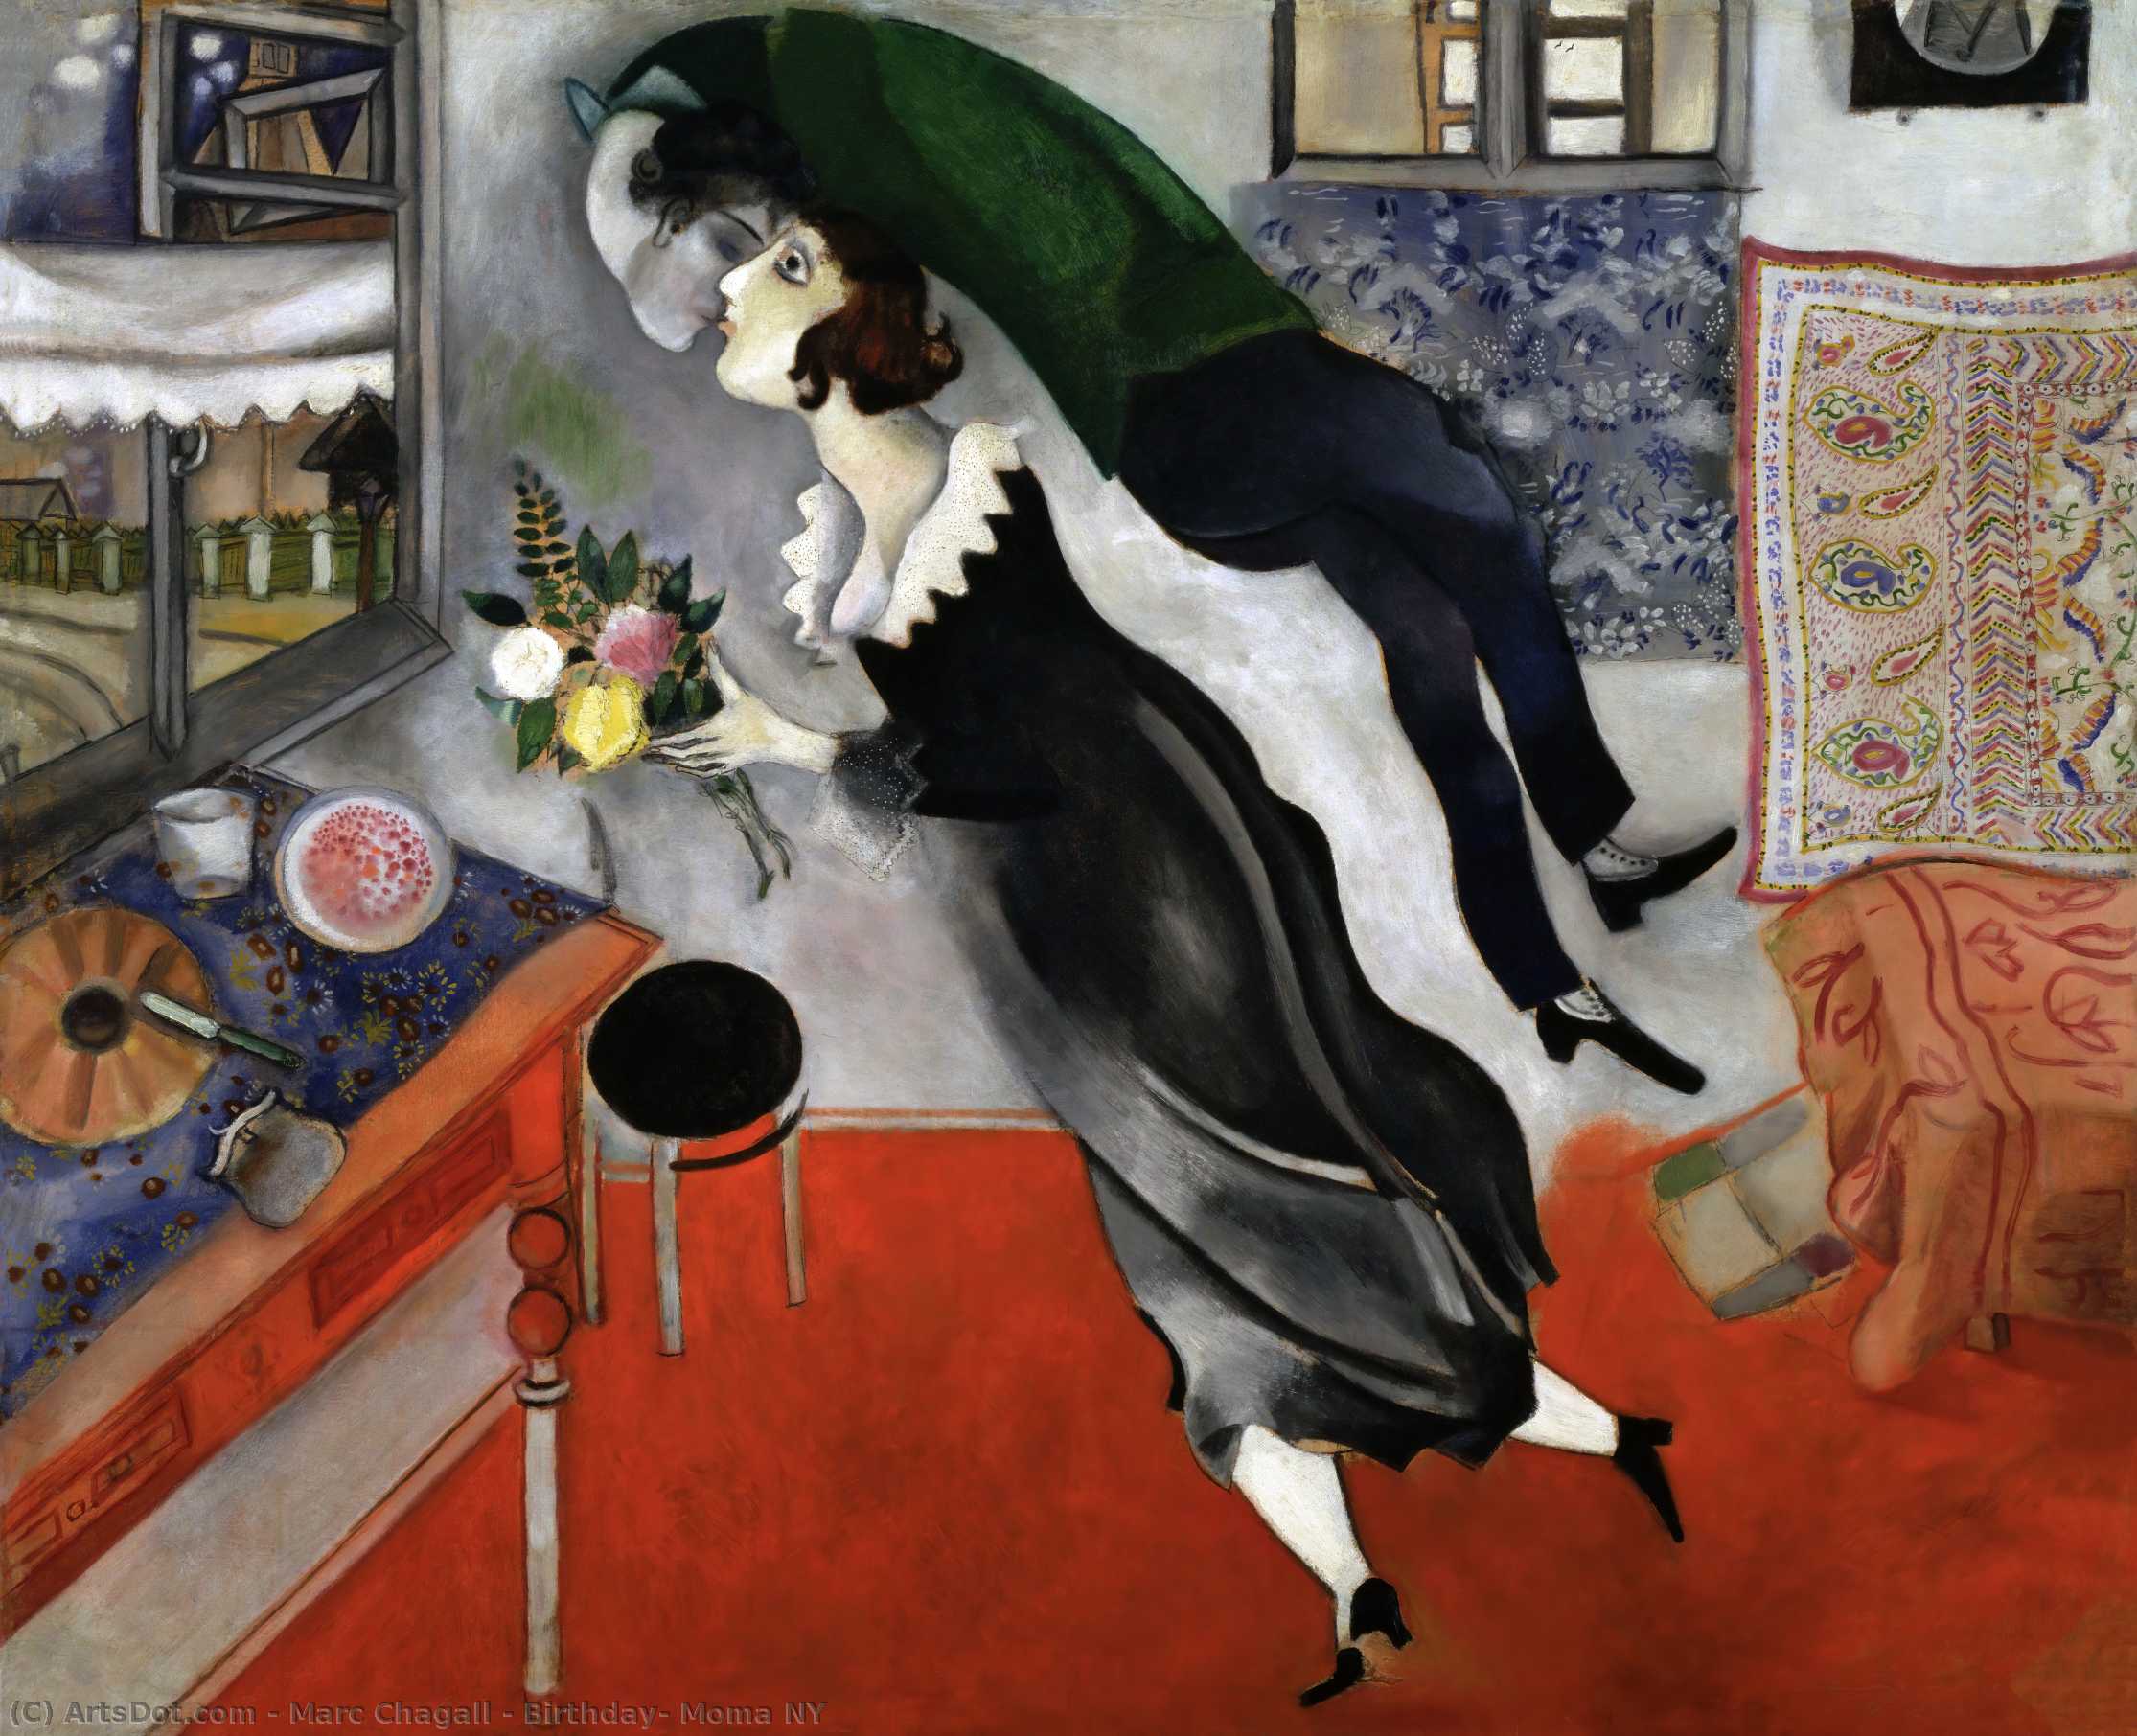 WikiOO.org - Encyclopedia of Fine Arts - Malba, Artwork Marc Chagall - Birthday, Moma NY